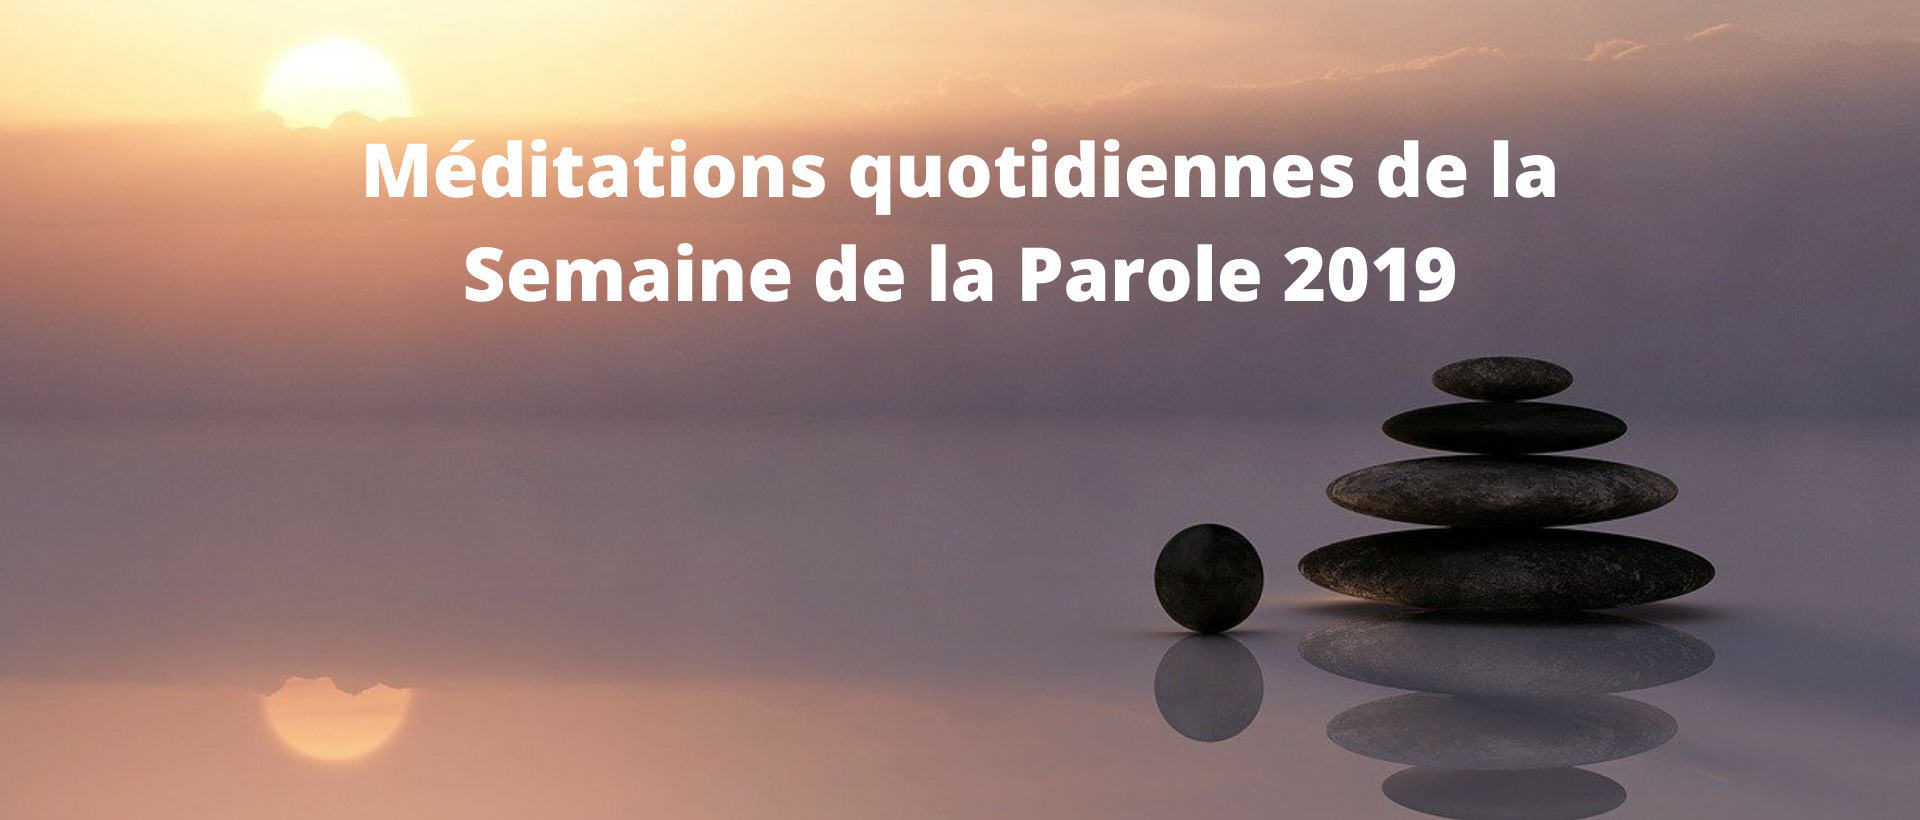 Me_ditations_quotidiennes_2019_banniere.png